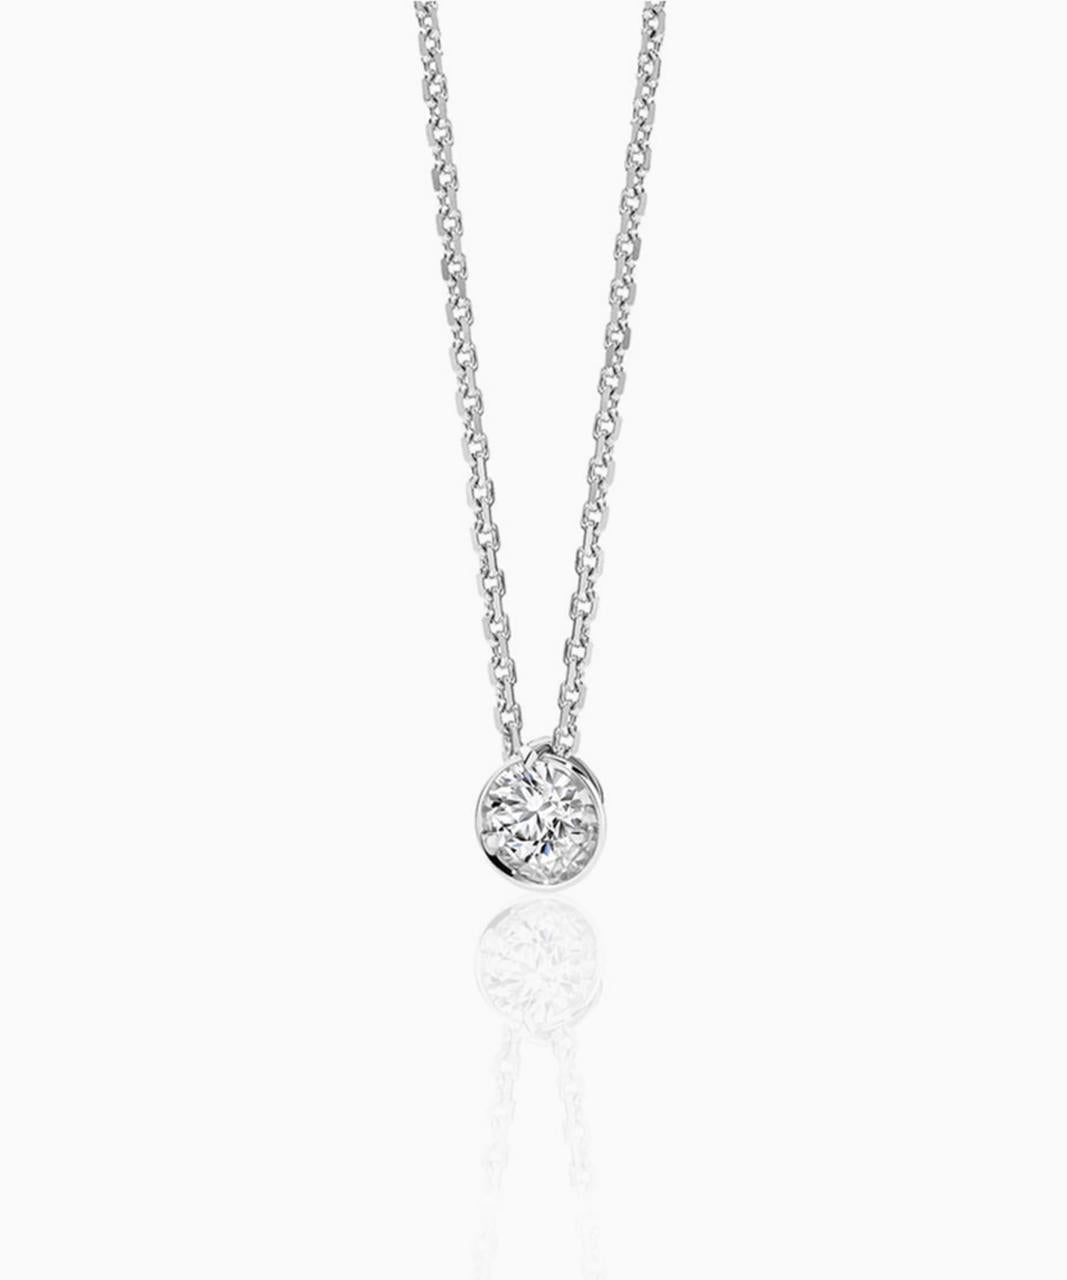 Eclipse Diamond Necklace